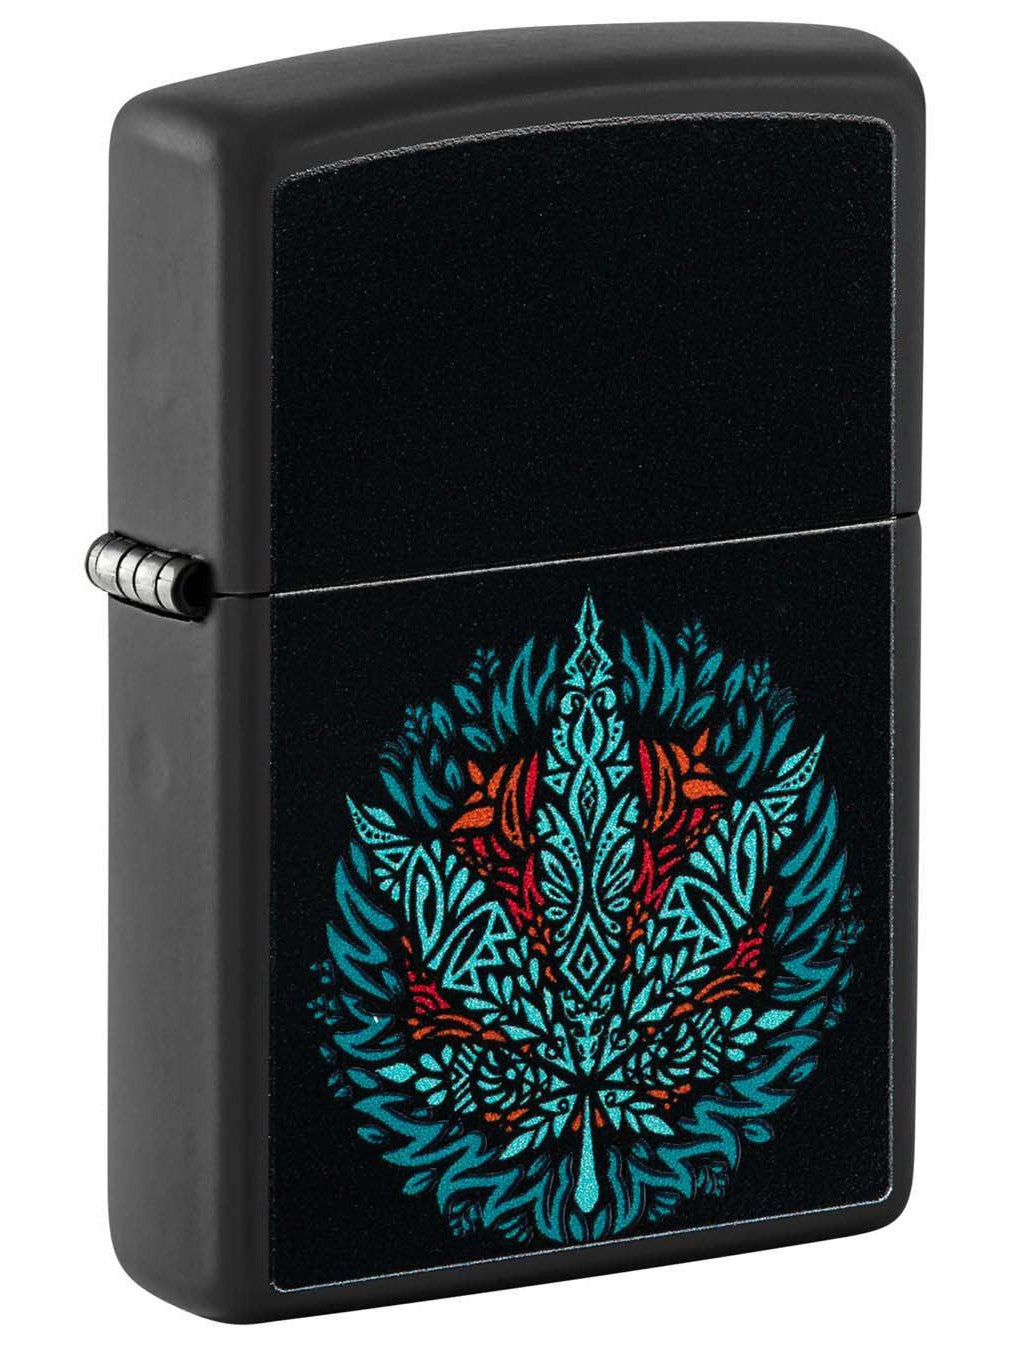 Zippo Lighter: Weed Leaf, Black Light - Black Matte 48535